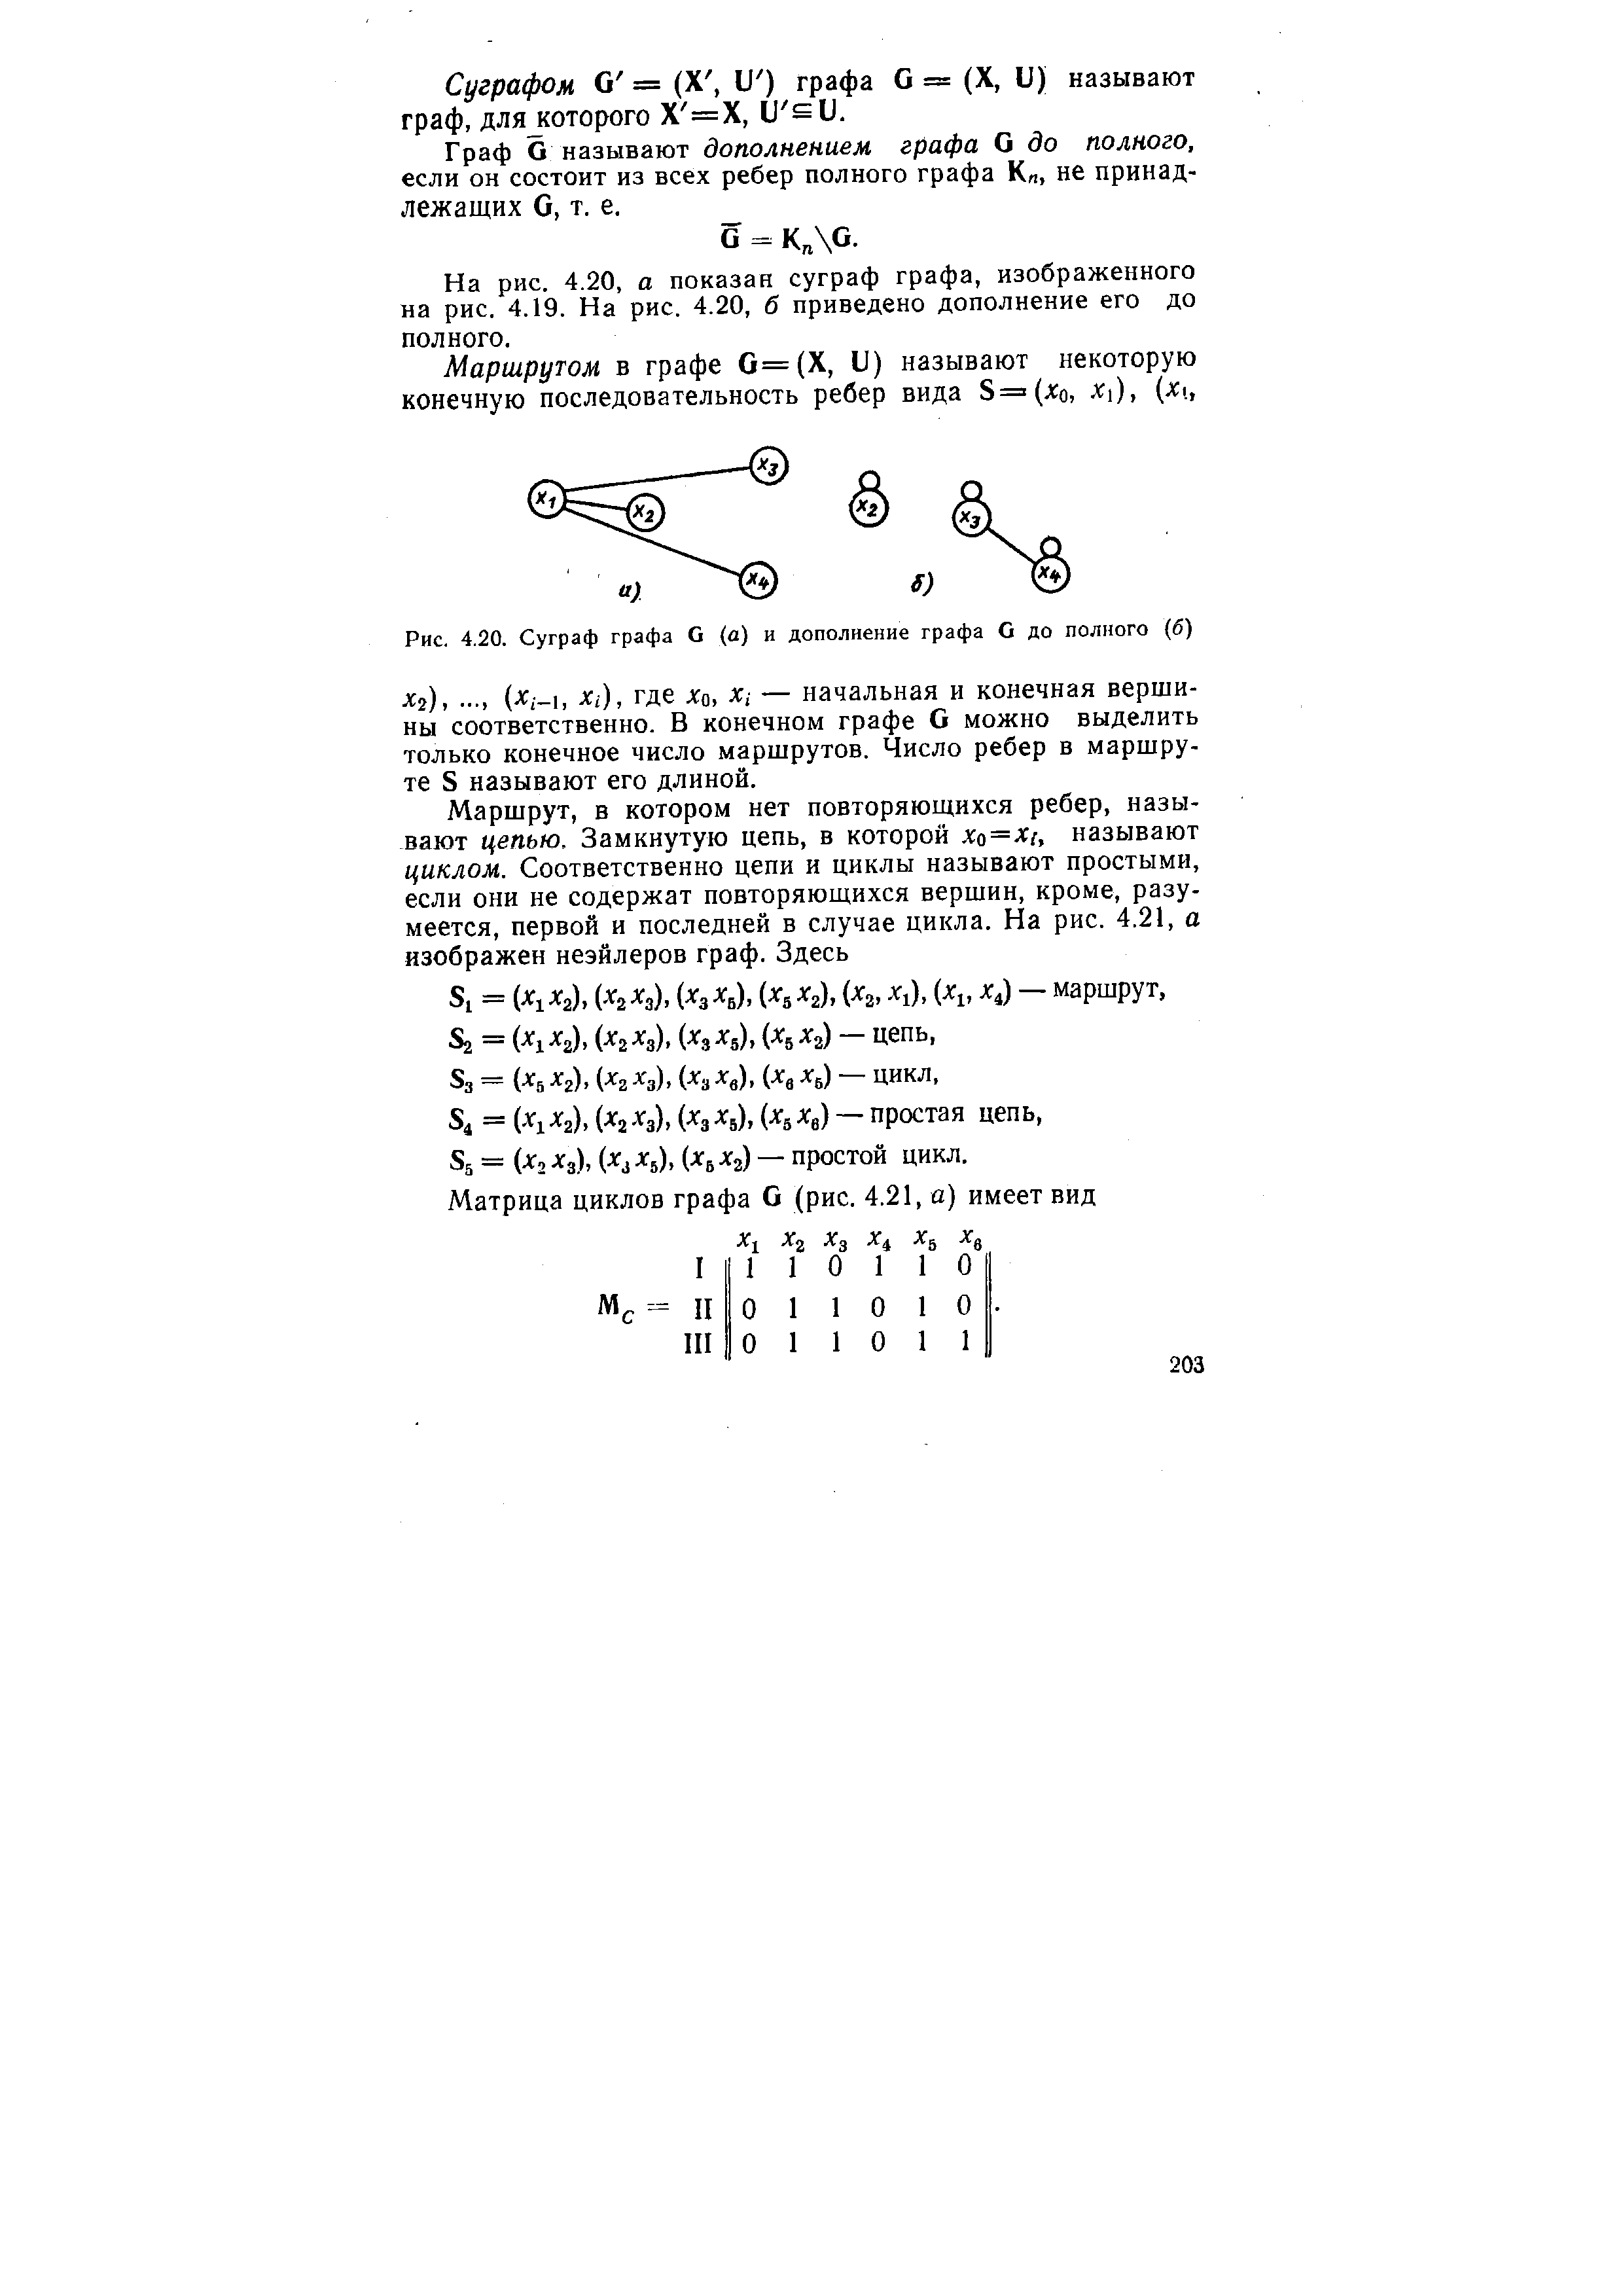 Рис. 4.20. Суграф графа G (а) и дополнение графа G до полного (б)
